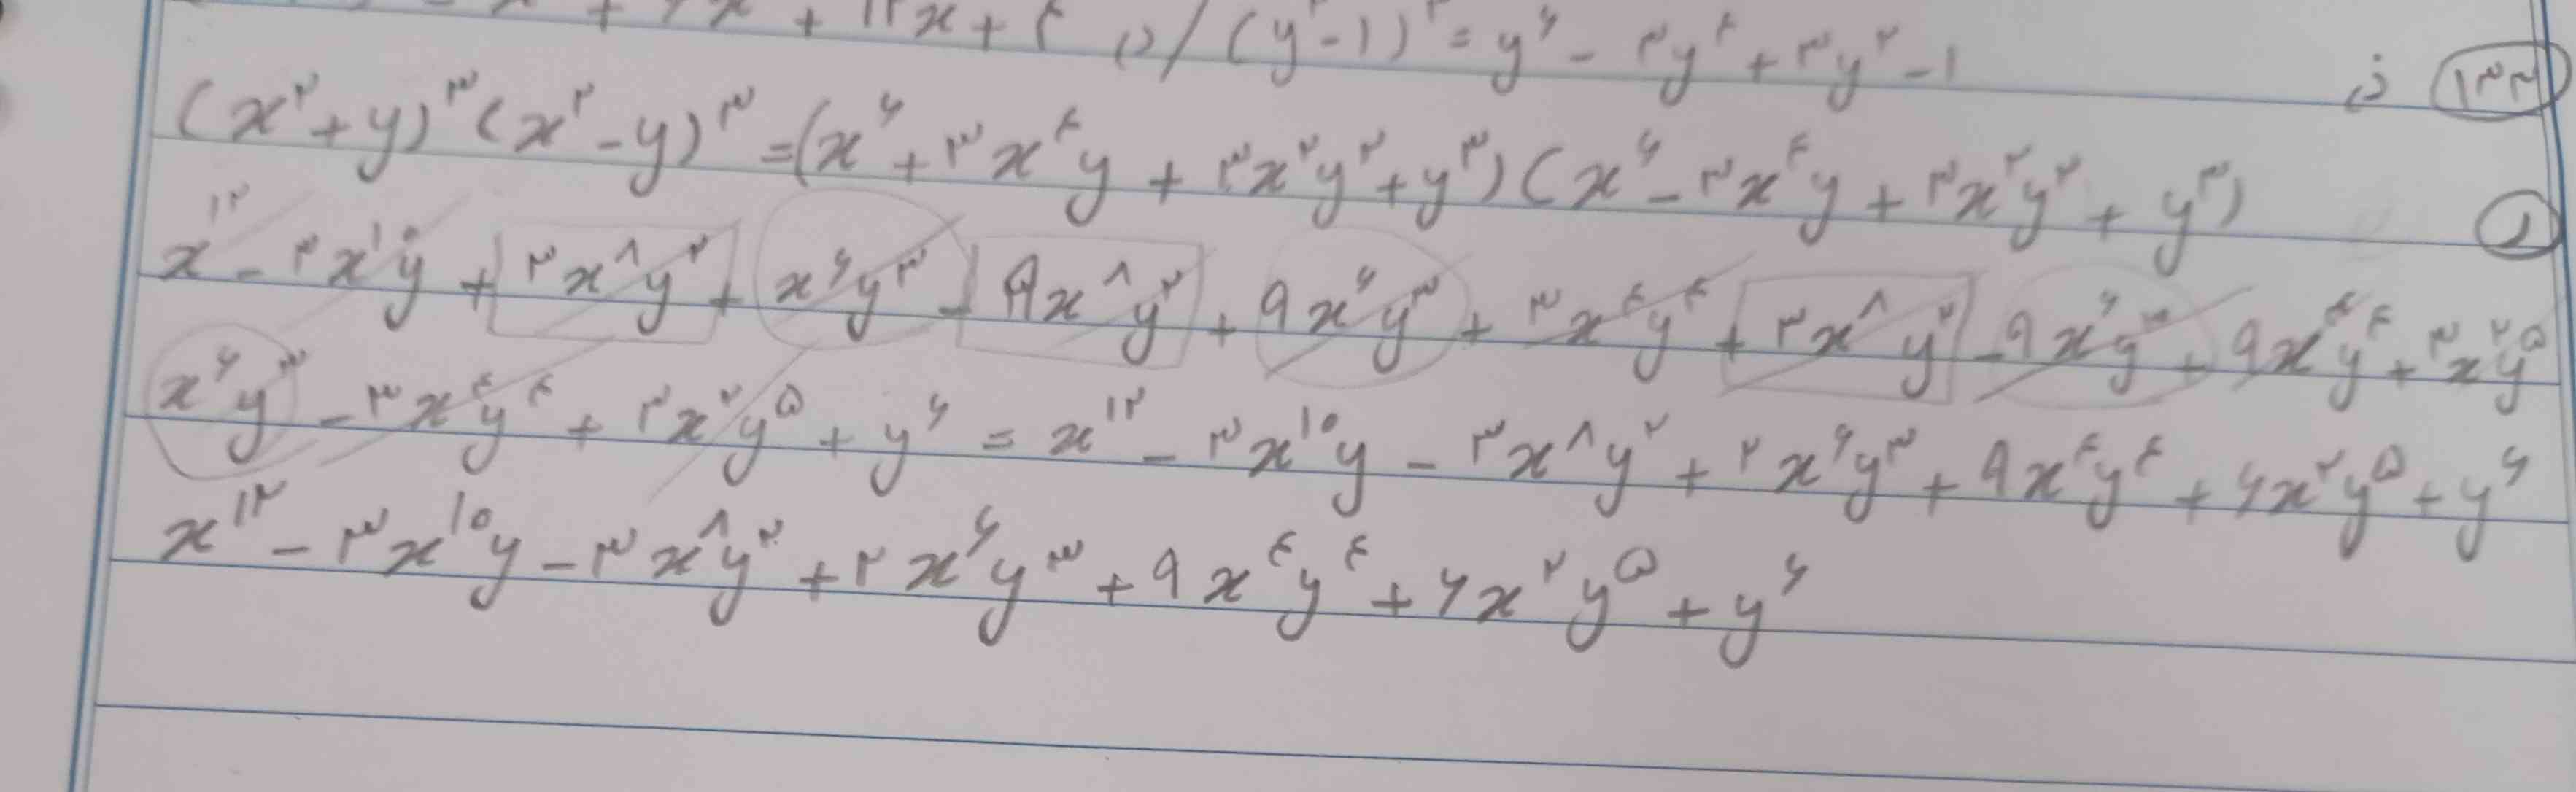 ریاضی زیباست...:///

ولی جواب تهش اشتباه بود😂😂
خواستم روش خودم برم که نشد ولی چهار خط جواب نوشتم براش....